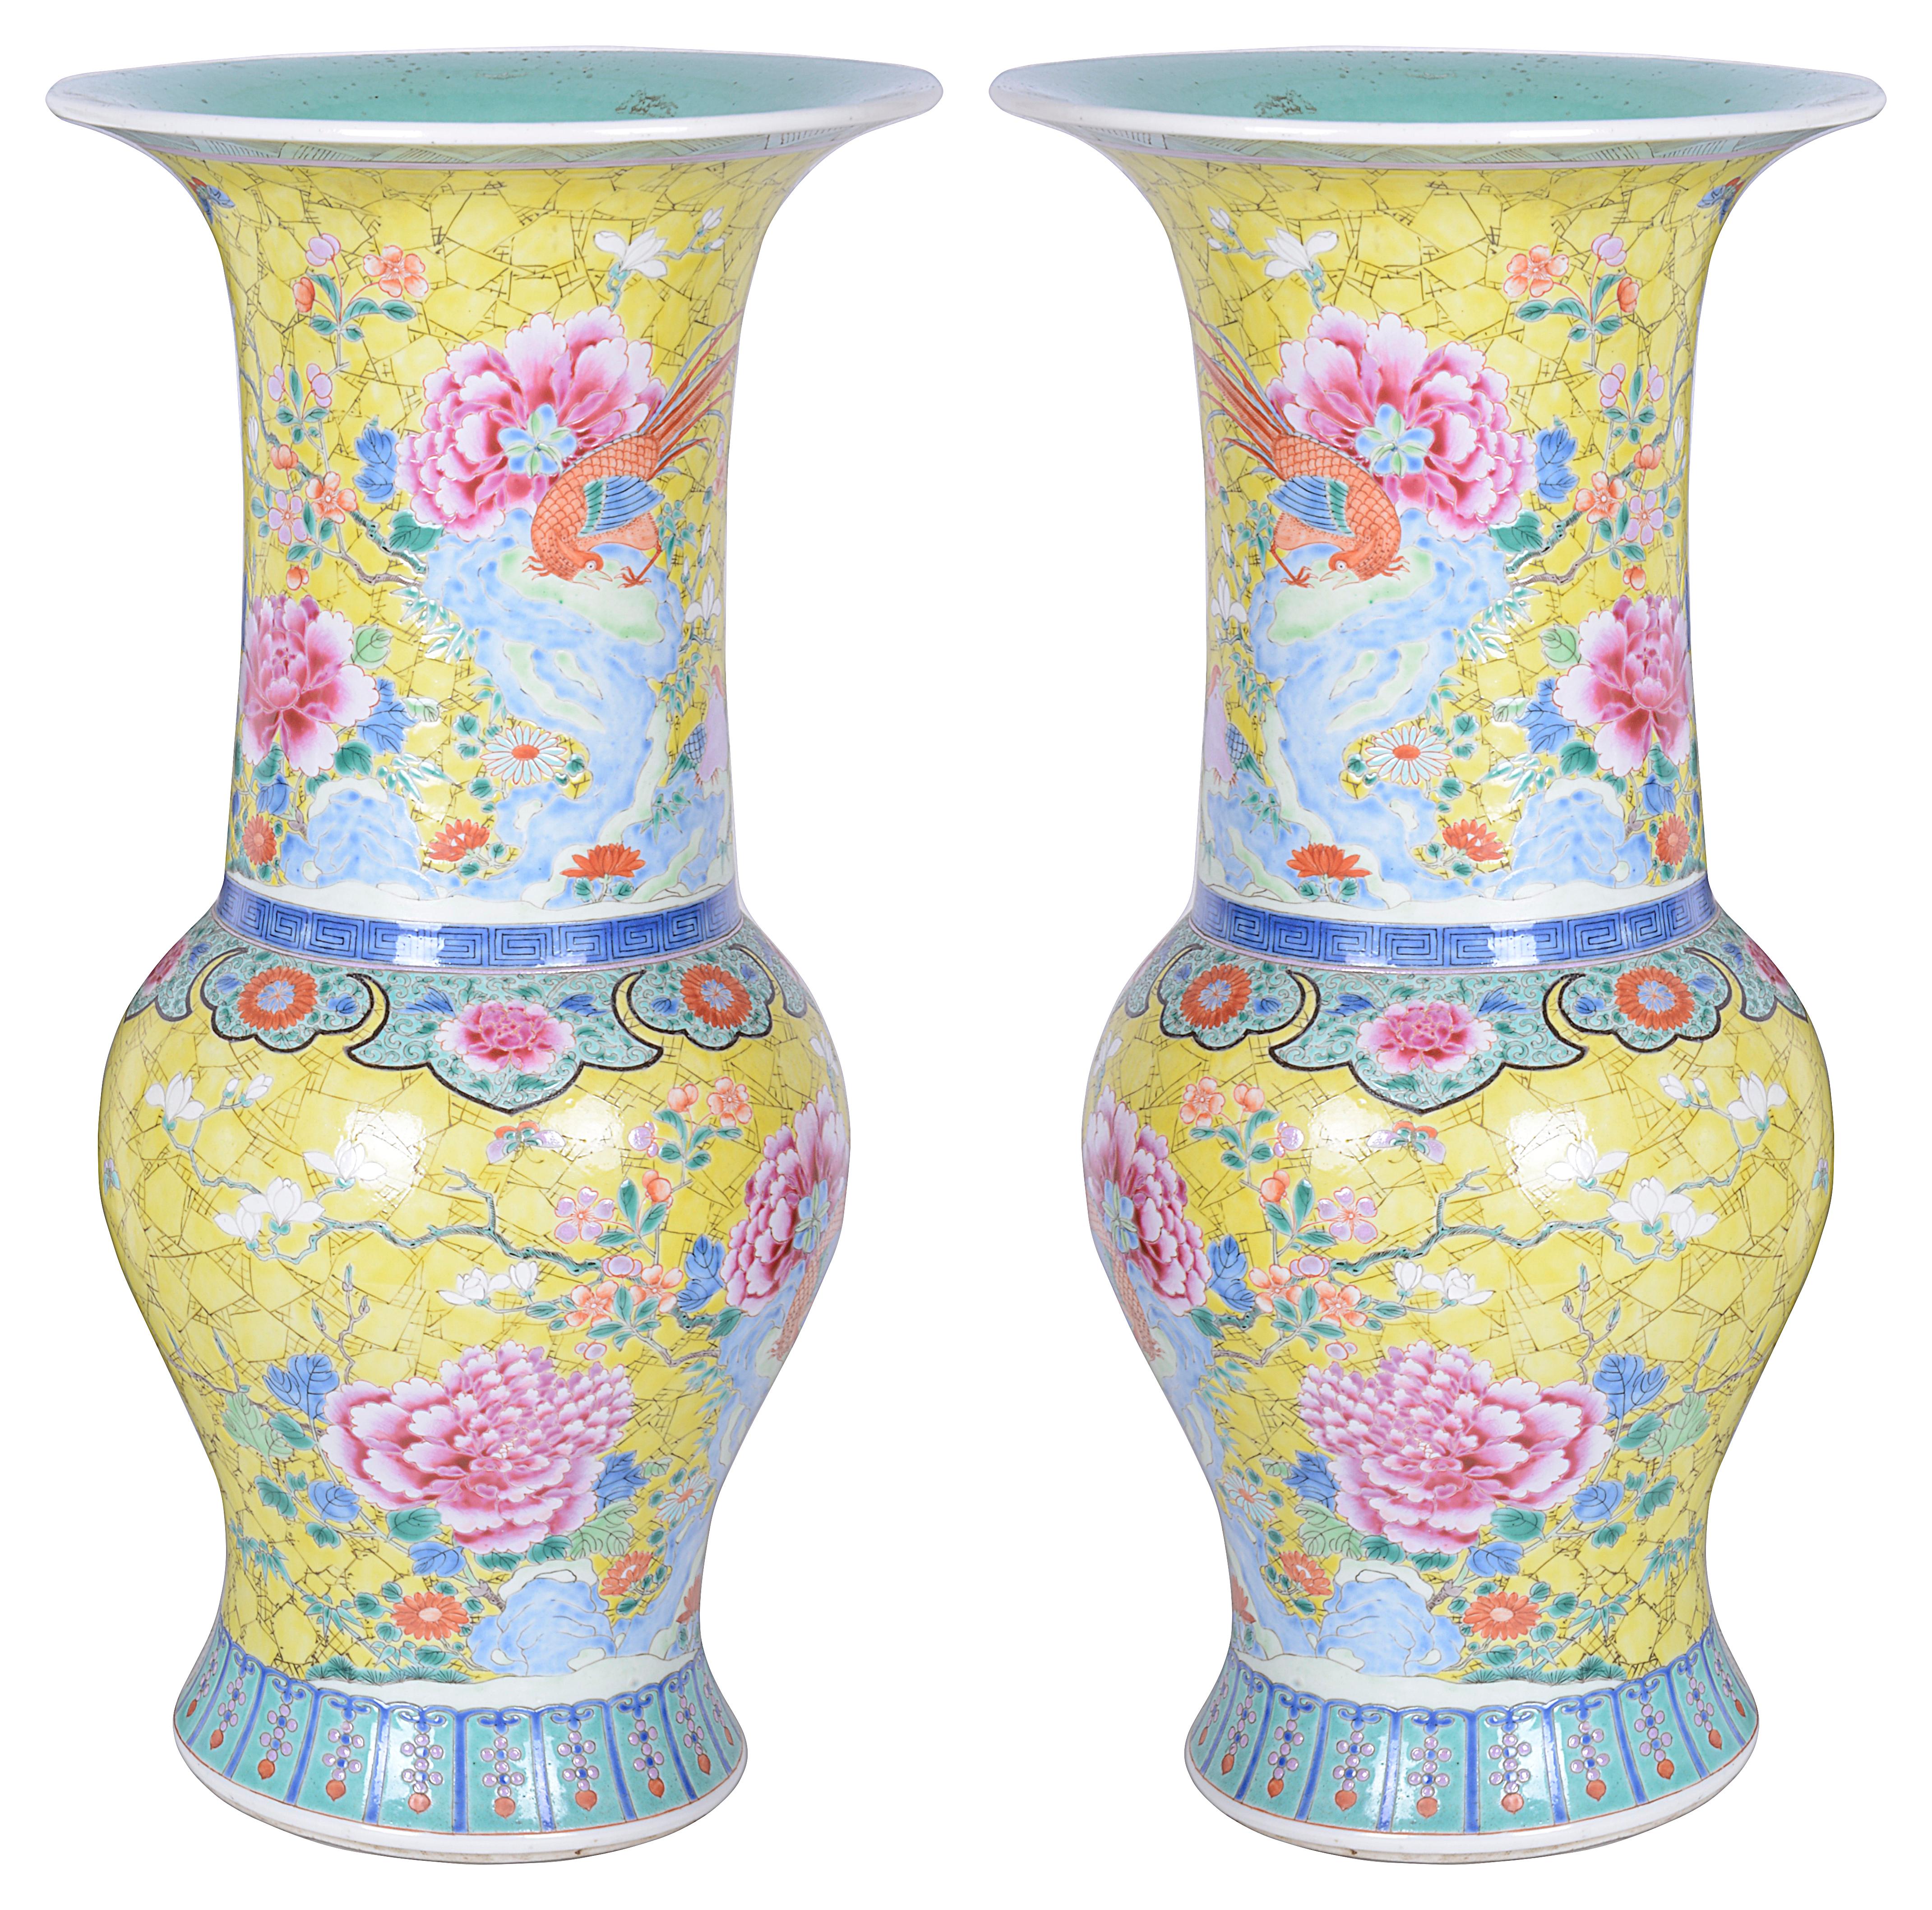 Ein schönes Paar chinesischer Famille-Rose-Vasen/Lampen aus dem späten 19. Jahrhundert, jeweils mit gelbem Grund mit ekotischen Vögeln und Blumen.